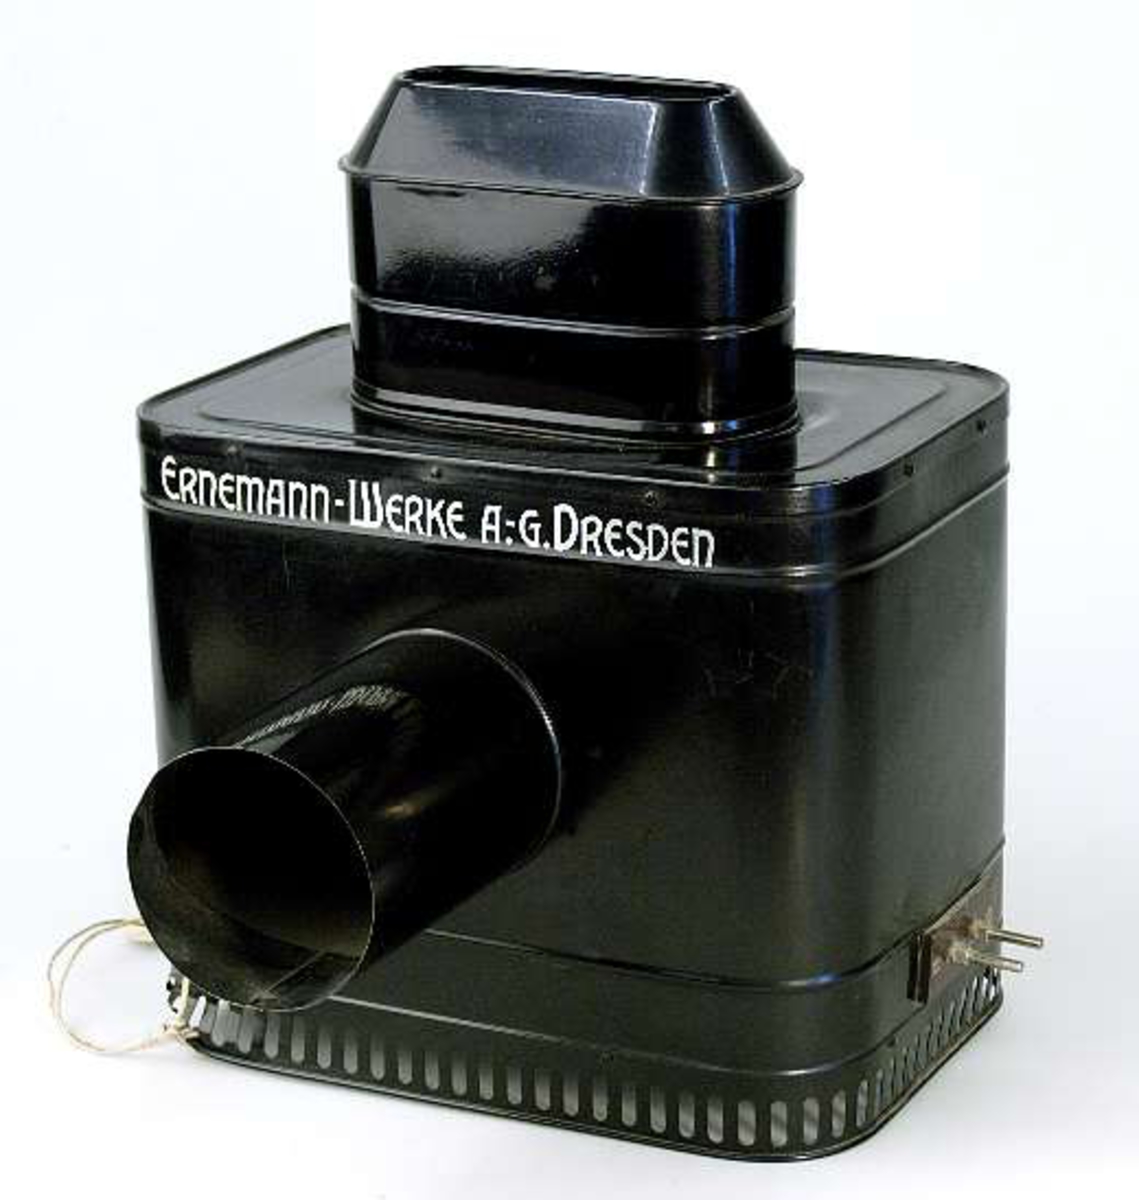 Skioptikonapparat av svart plåt. Text i guldfärg: ERNEMANN - WERKE A.-G. DRESDEN. Bildkassett på apparatens baksida. Projektionsrör (längd 11,5 cm) på framsidan. Två glödlampsfästen inuti apparaten. Apparaten är inte komplett.